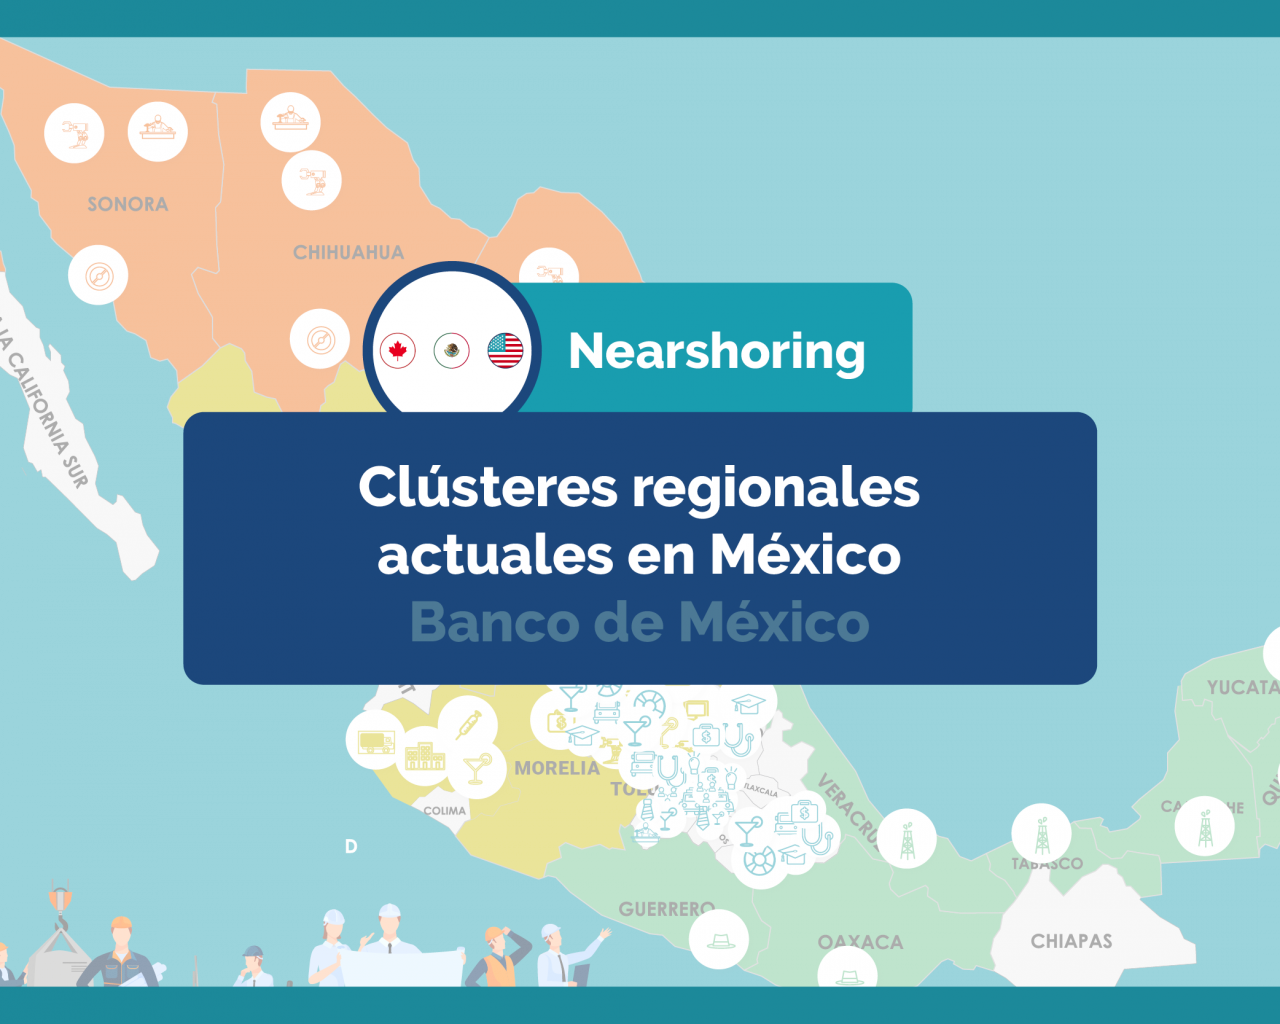 Nearshoring: Clústeres regionales actuales en México y su correlación con el crecimiento económico